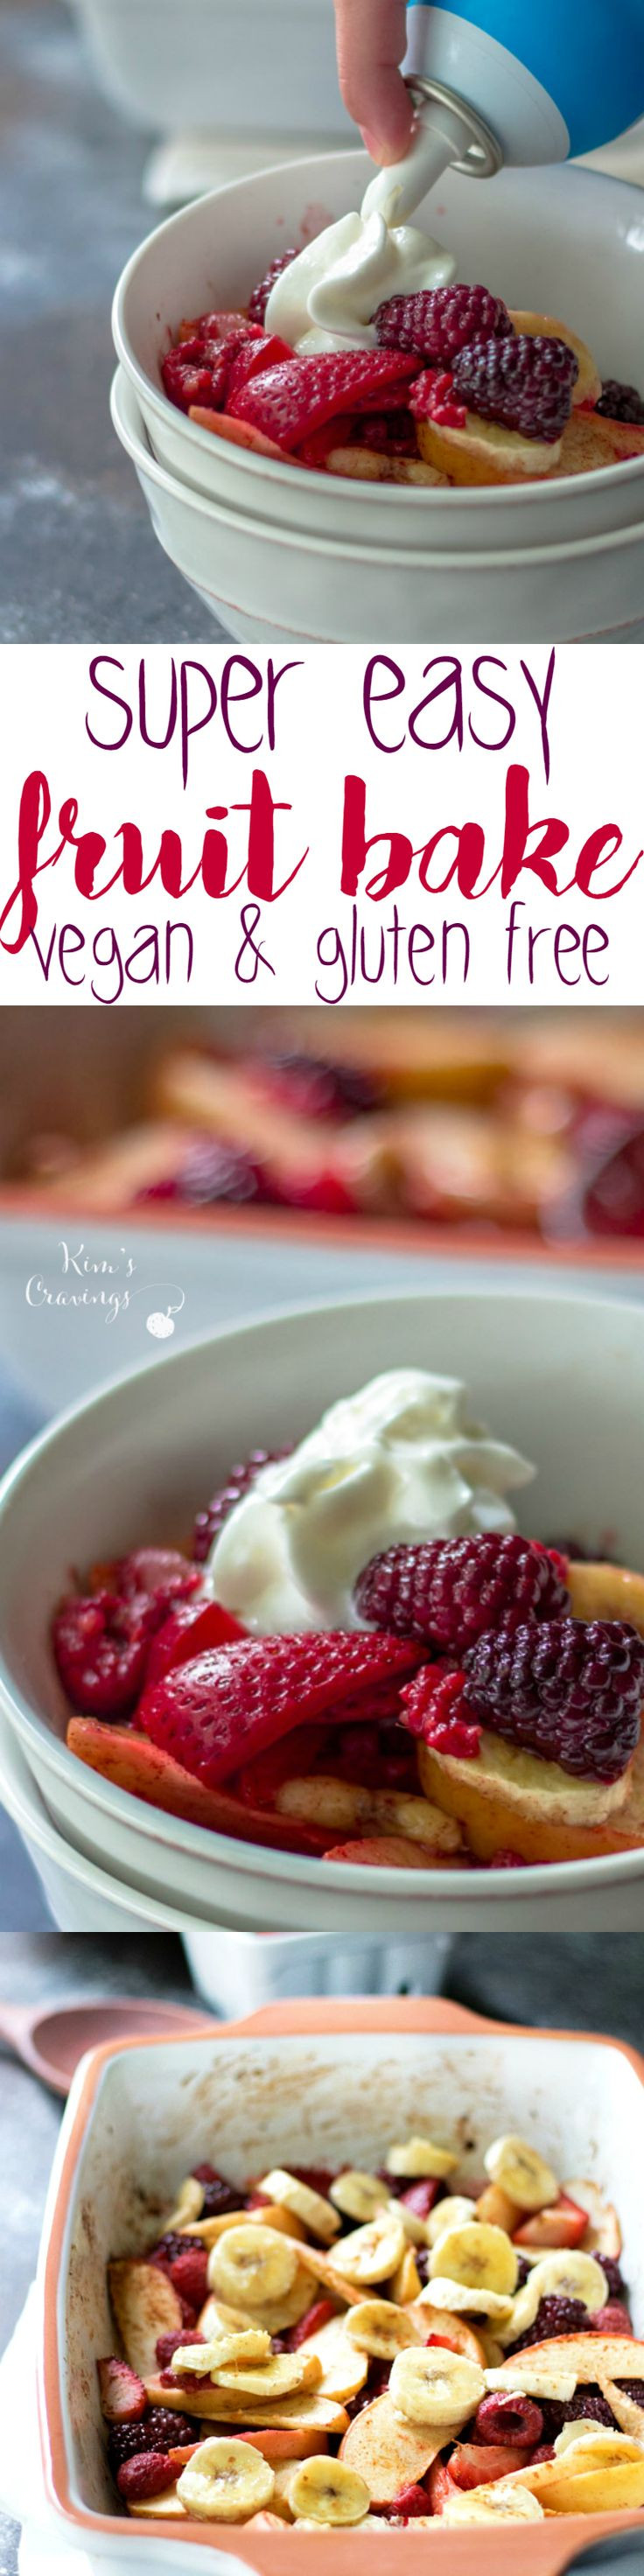 Super Easy Vegan Recipes
 Super Easy Healthy Baked Fruit Dessert vegan and gluten